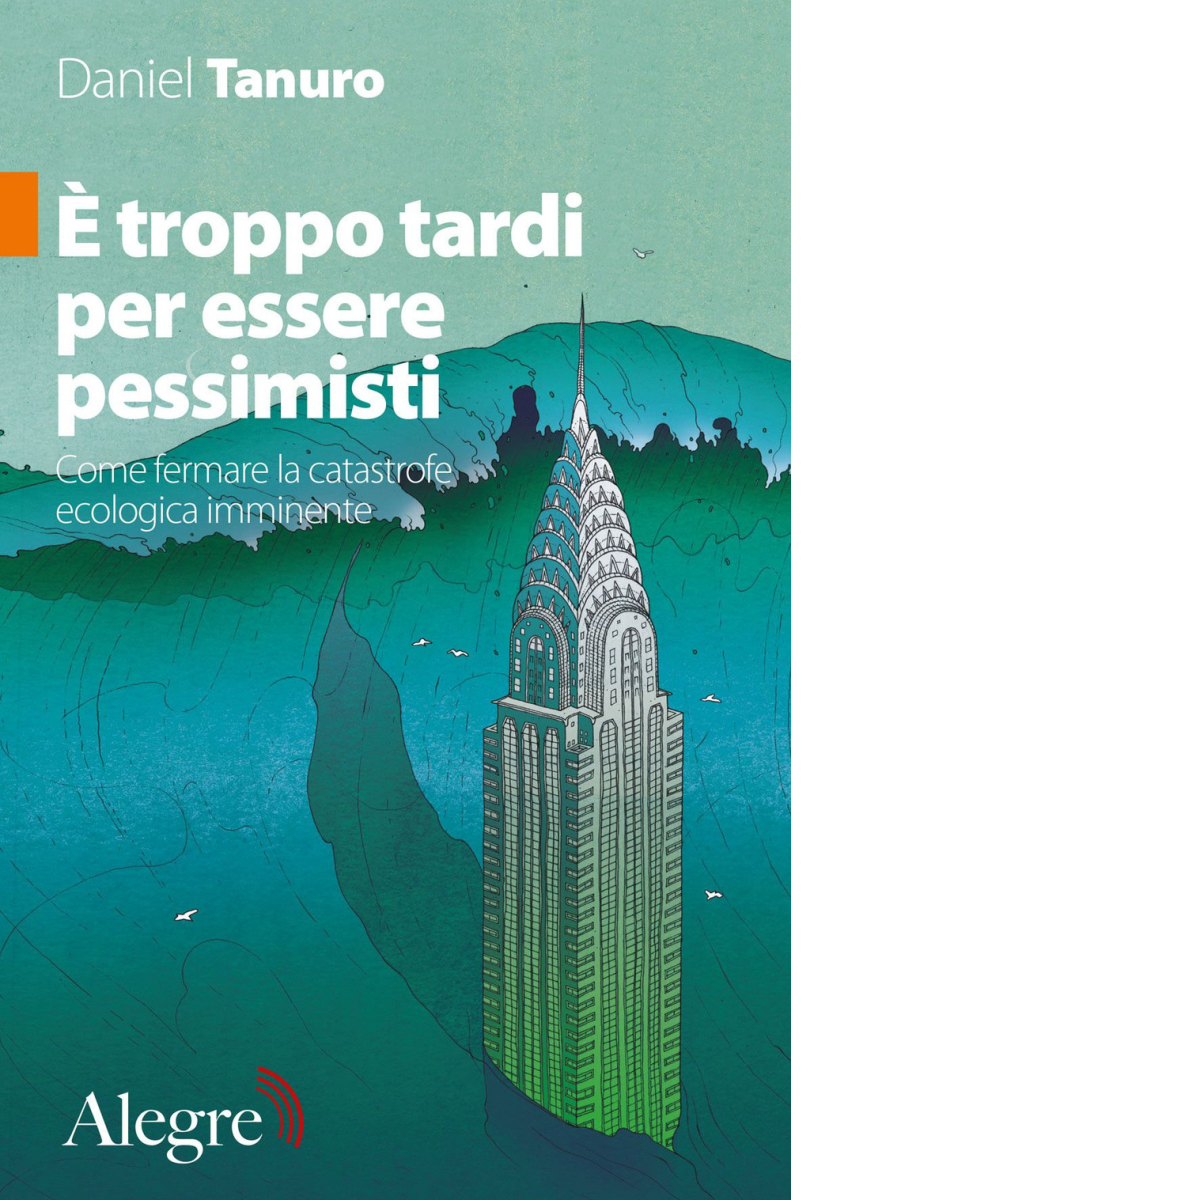 ? troppo tardi per essere pessimisti di Daniel Tanuro - edizioni alegre,2020